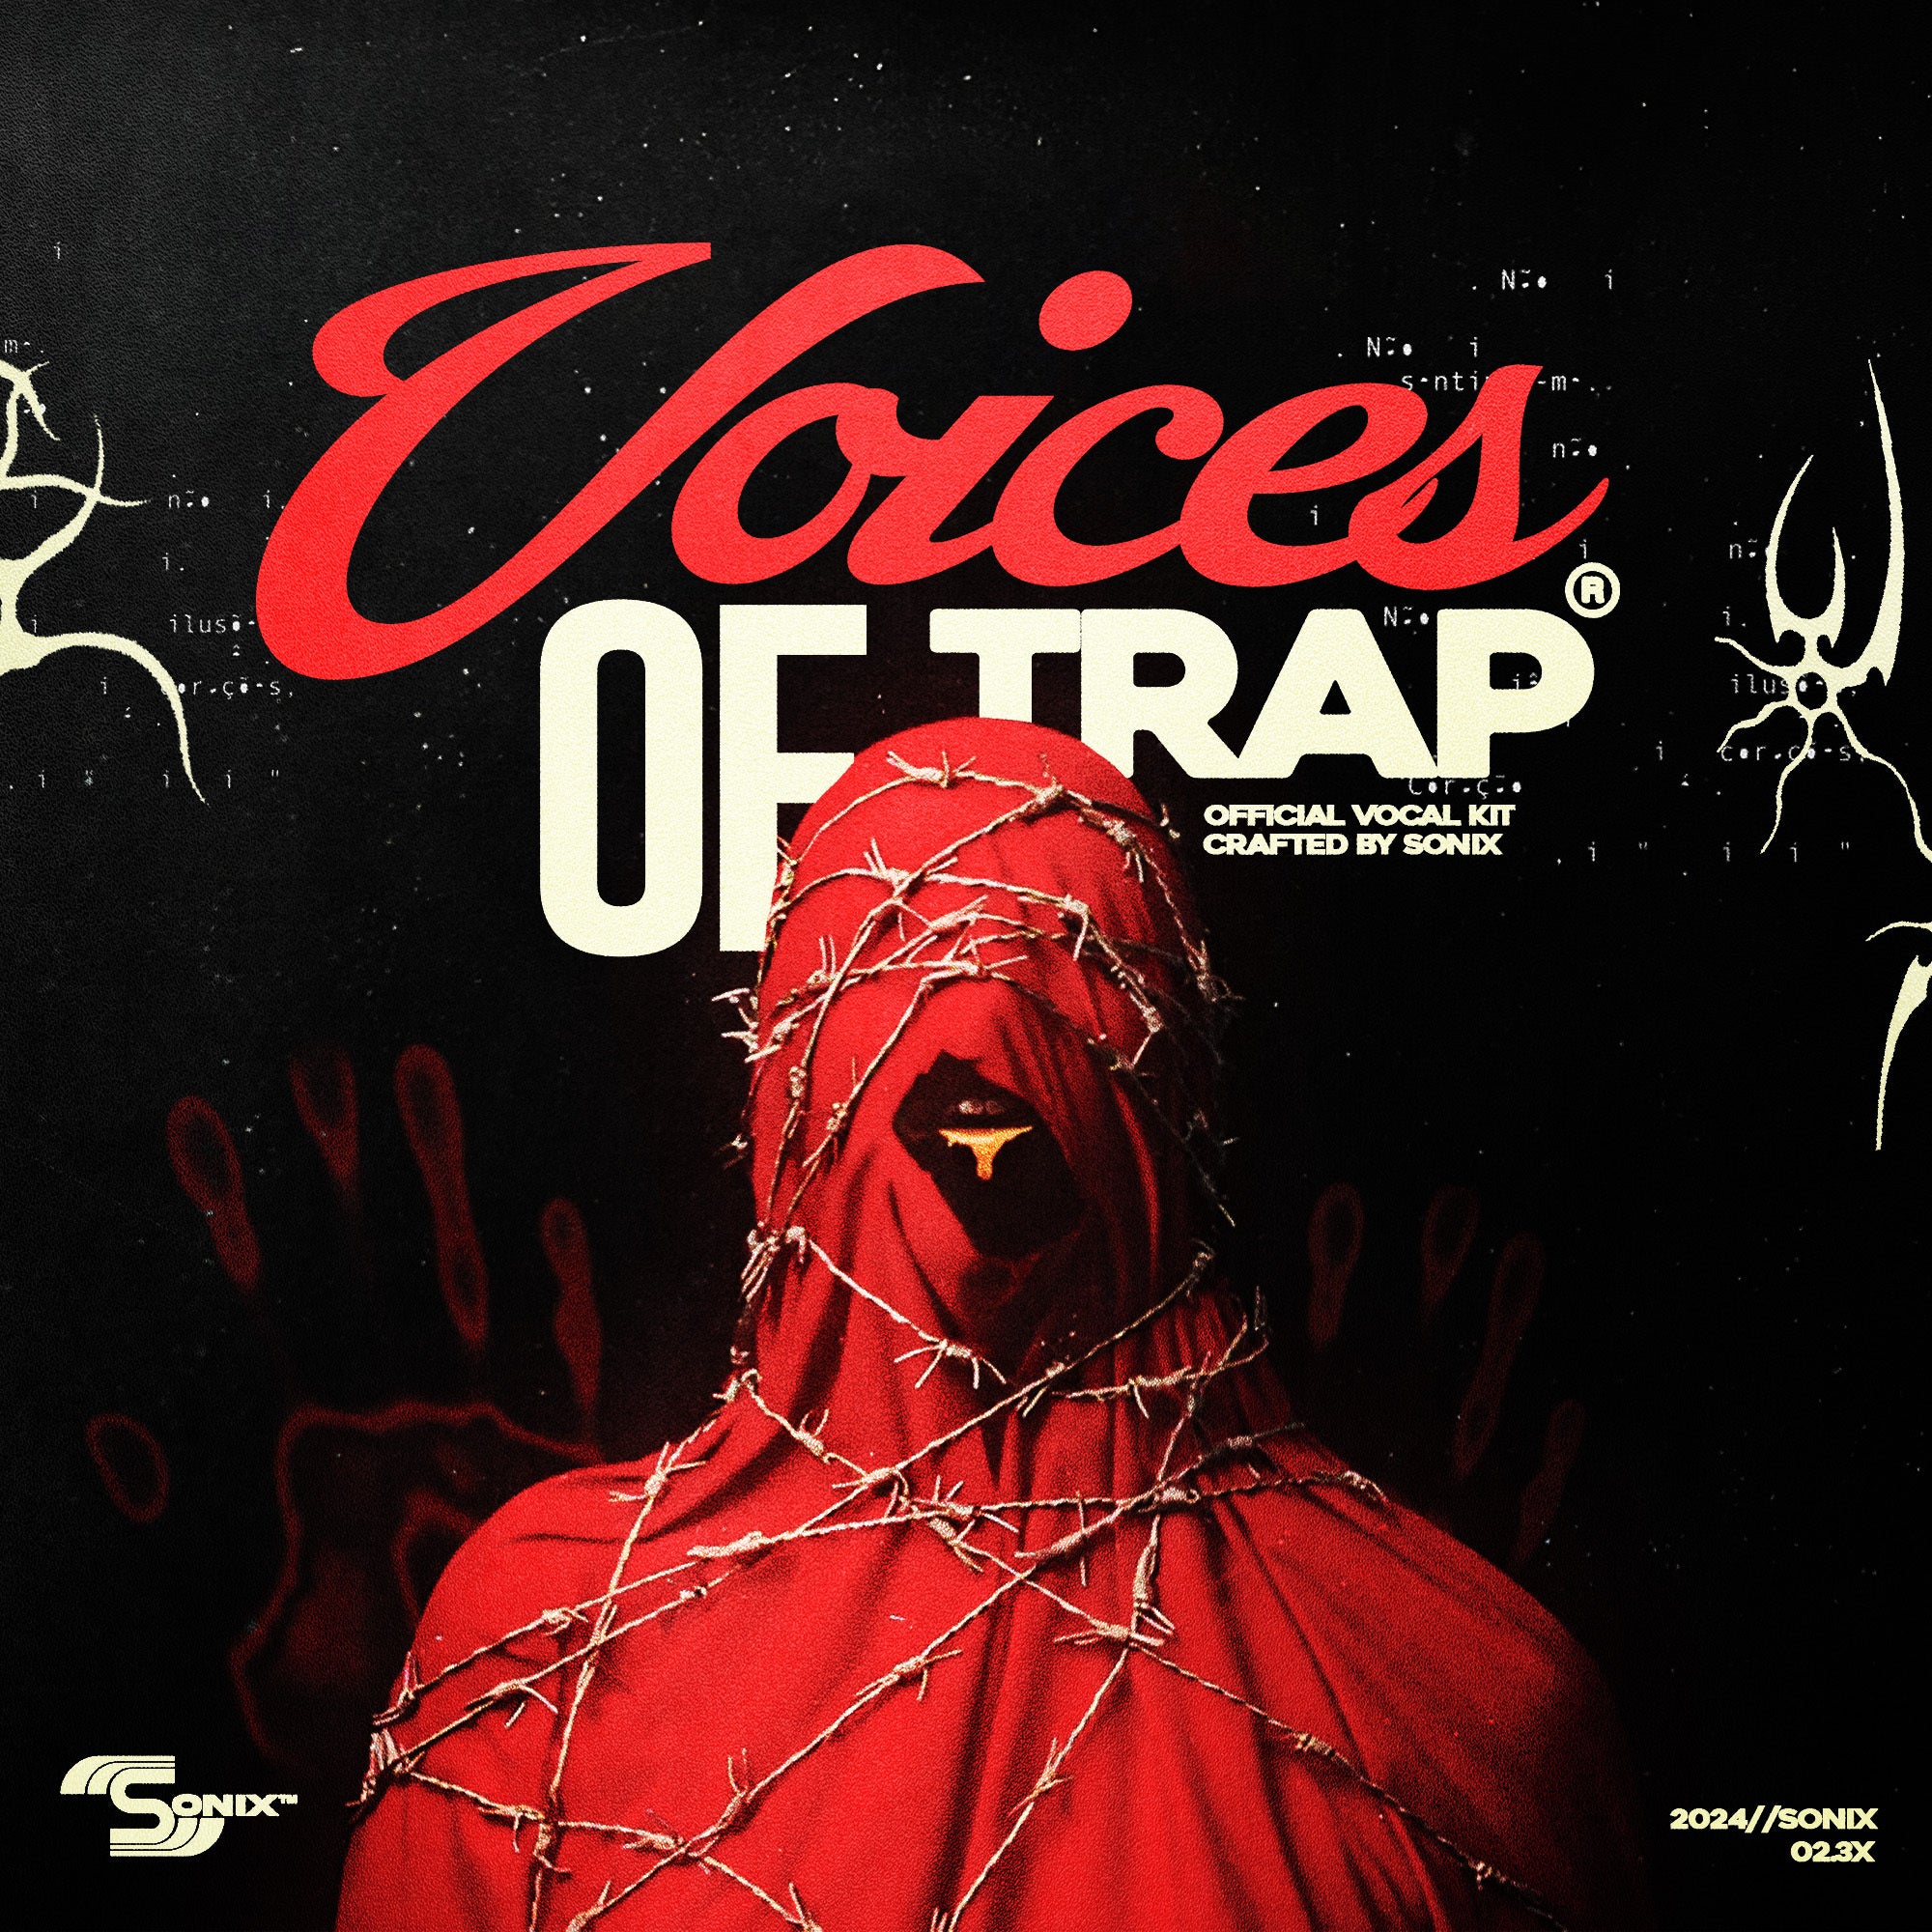 🔥 🎤 KXVI "VOICES OF TRAP" VOCAL KIT